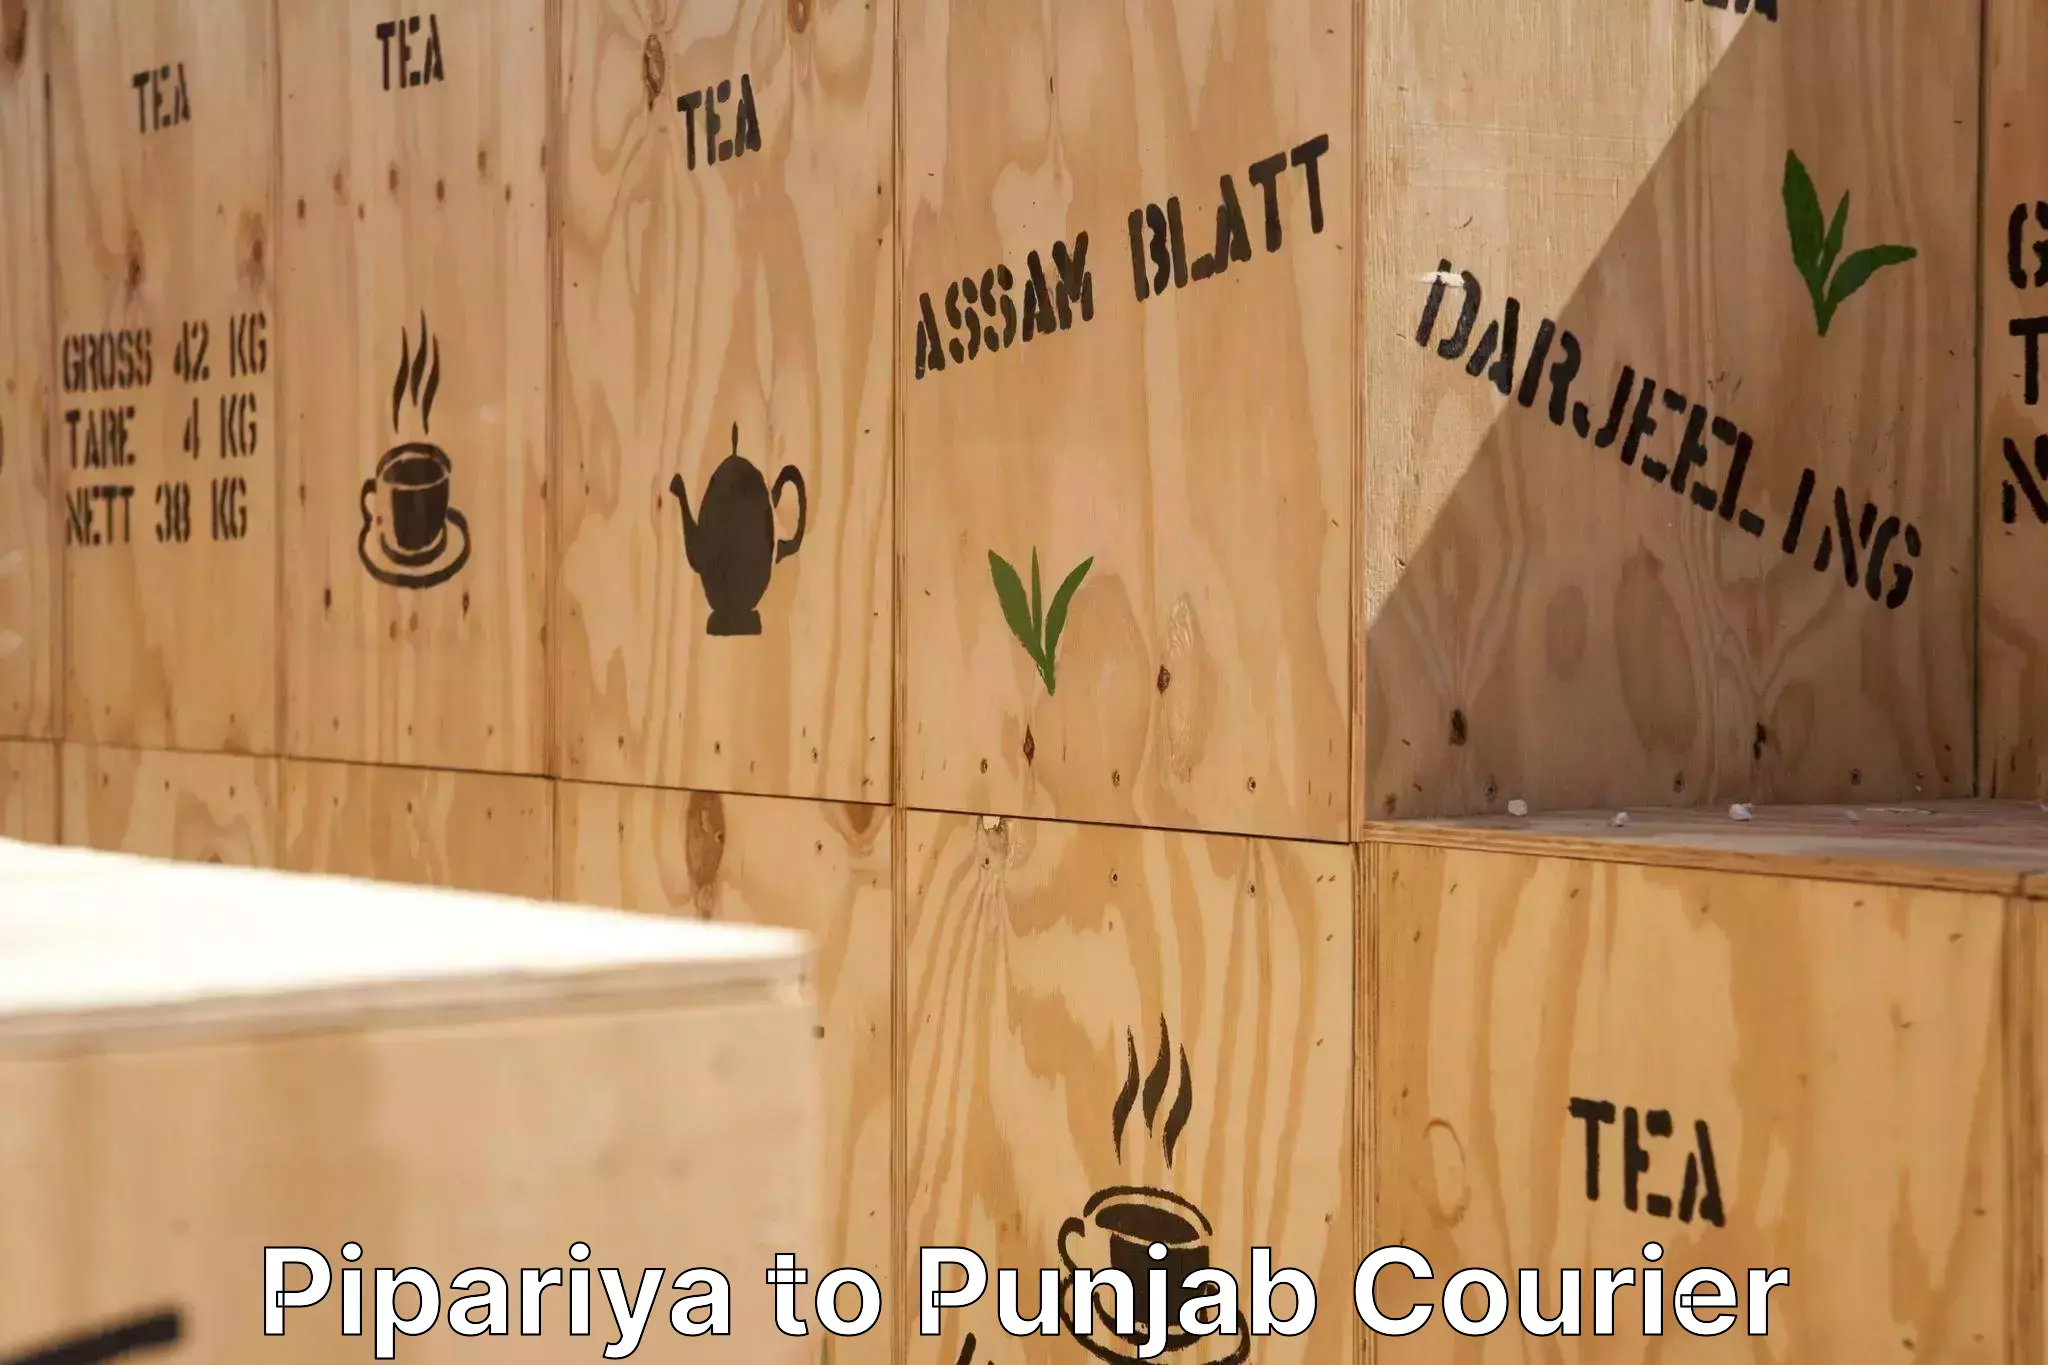 Household moving experts Pipariya to Punjab